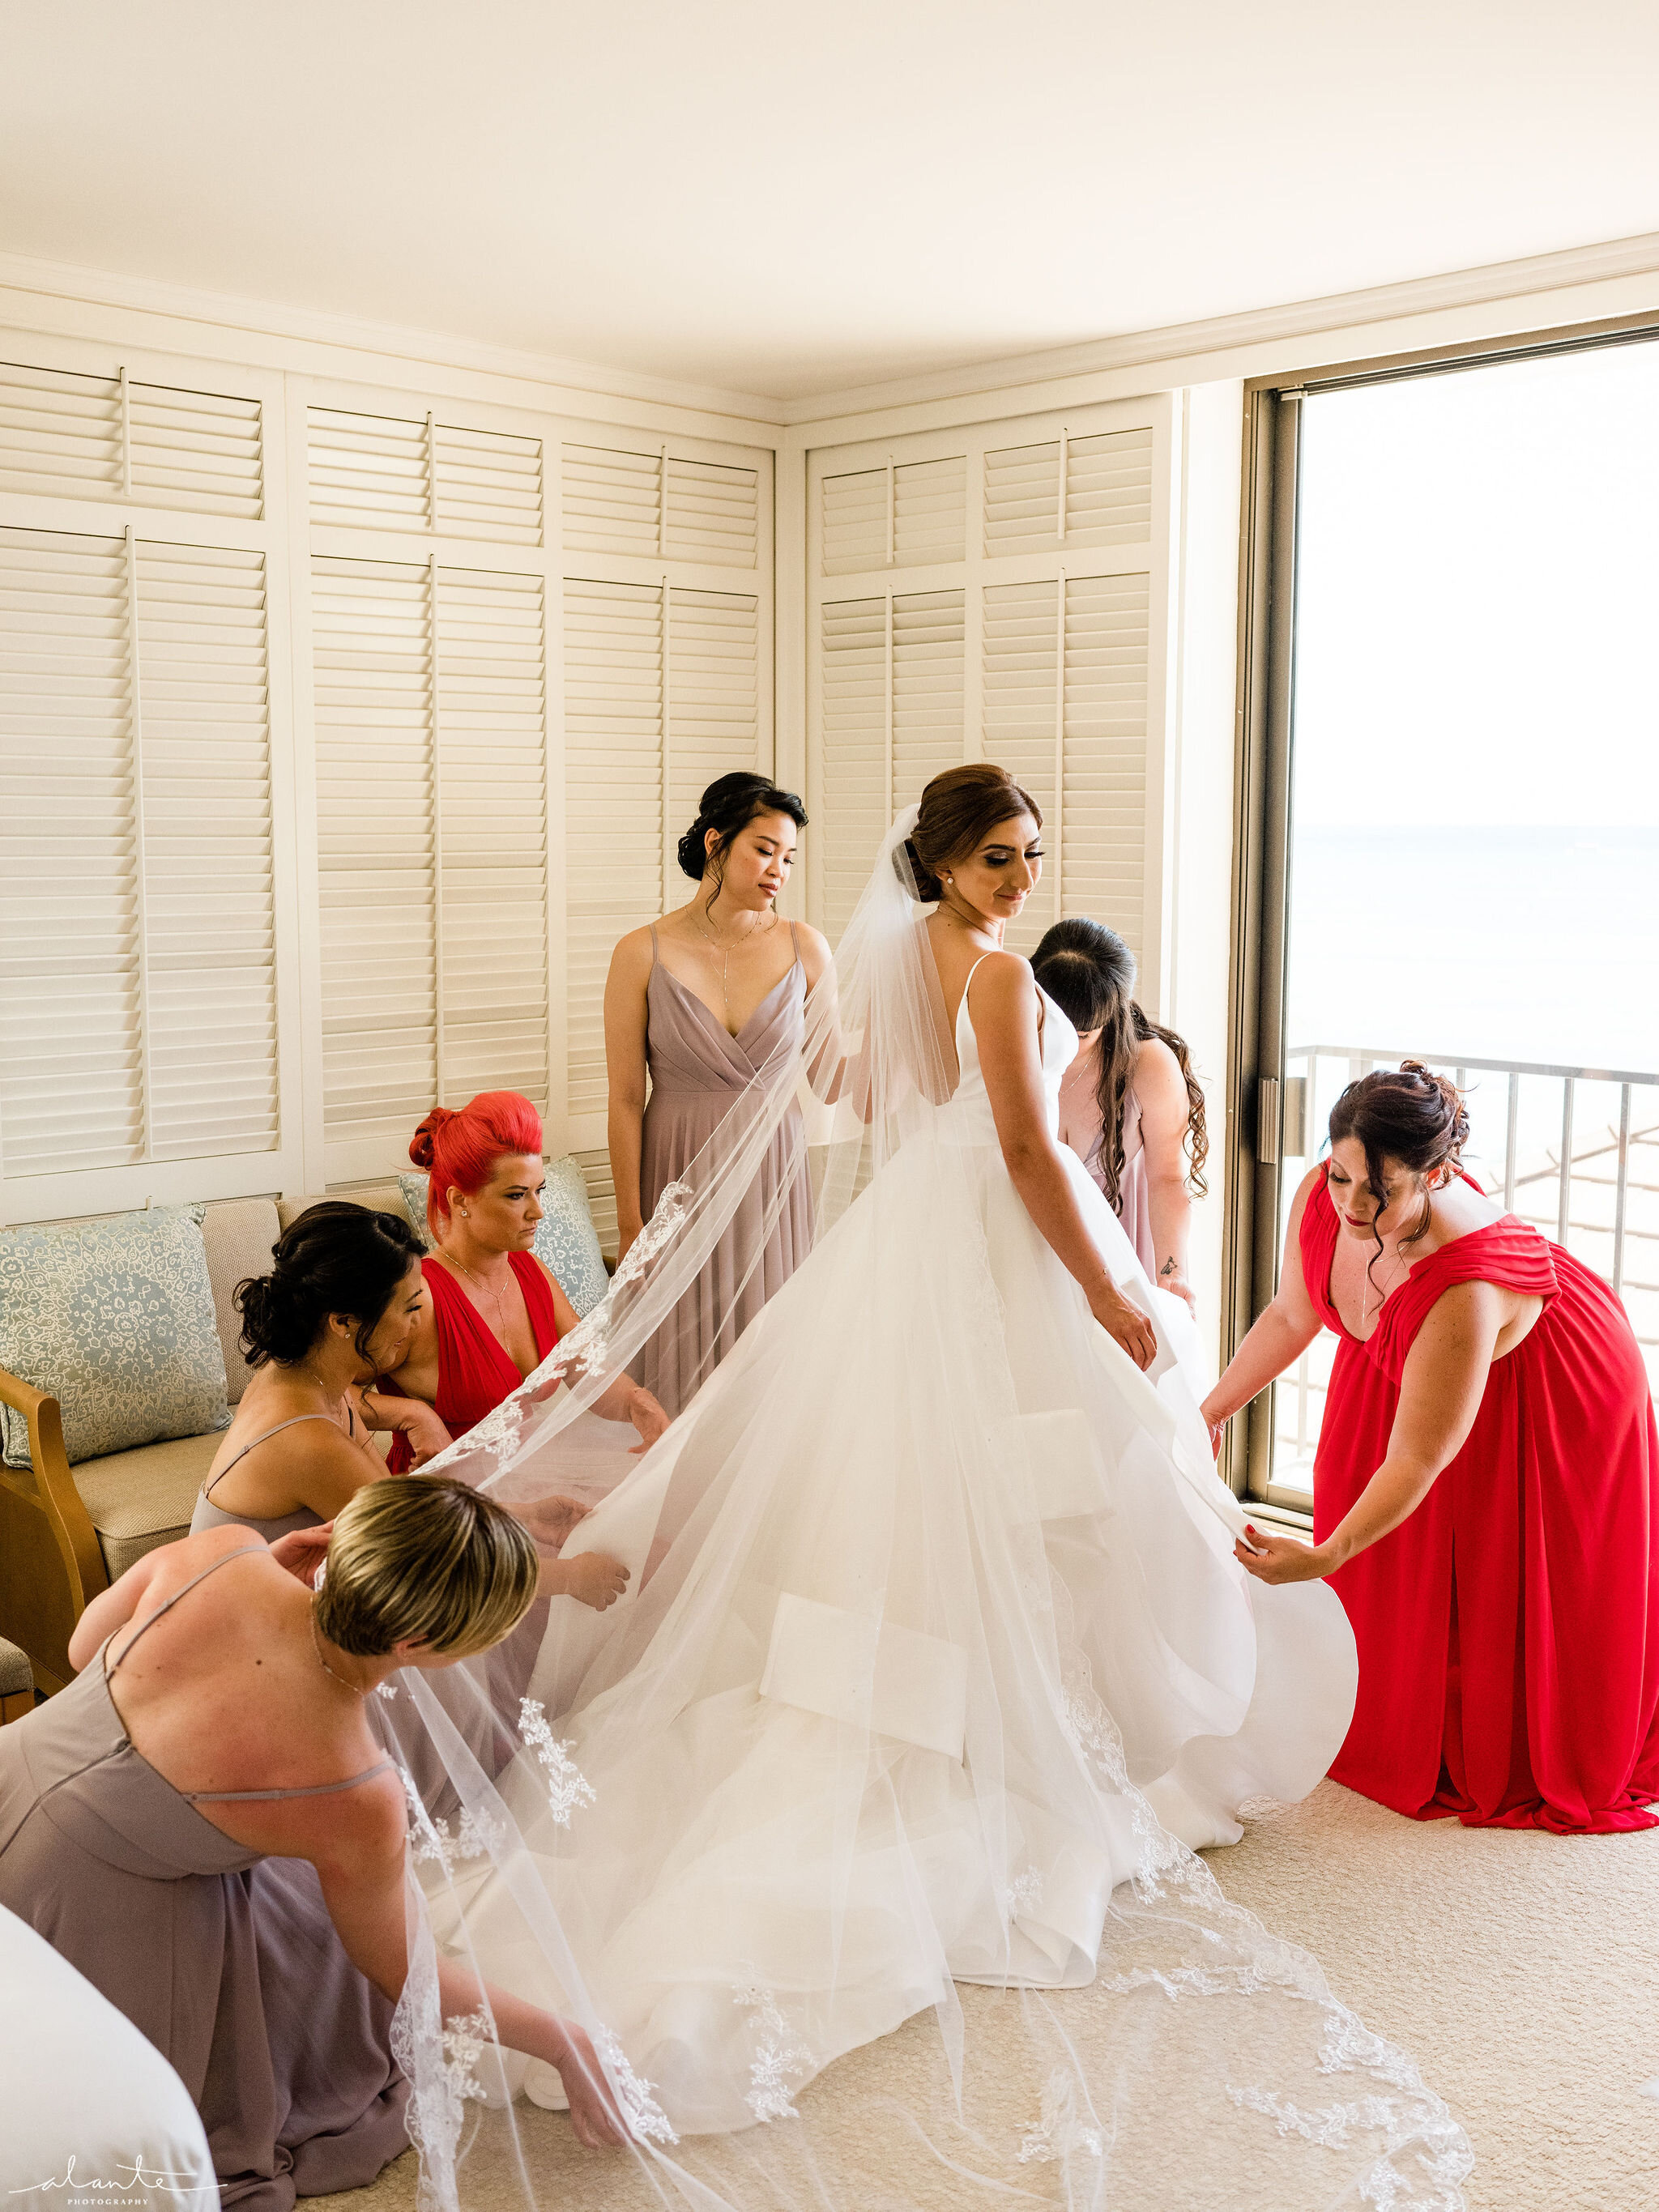 Alante-Photography-Hawaii-Honolulu-Wedding-012.jpg